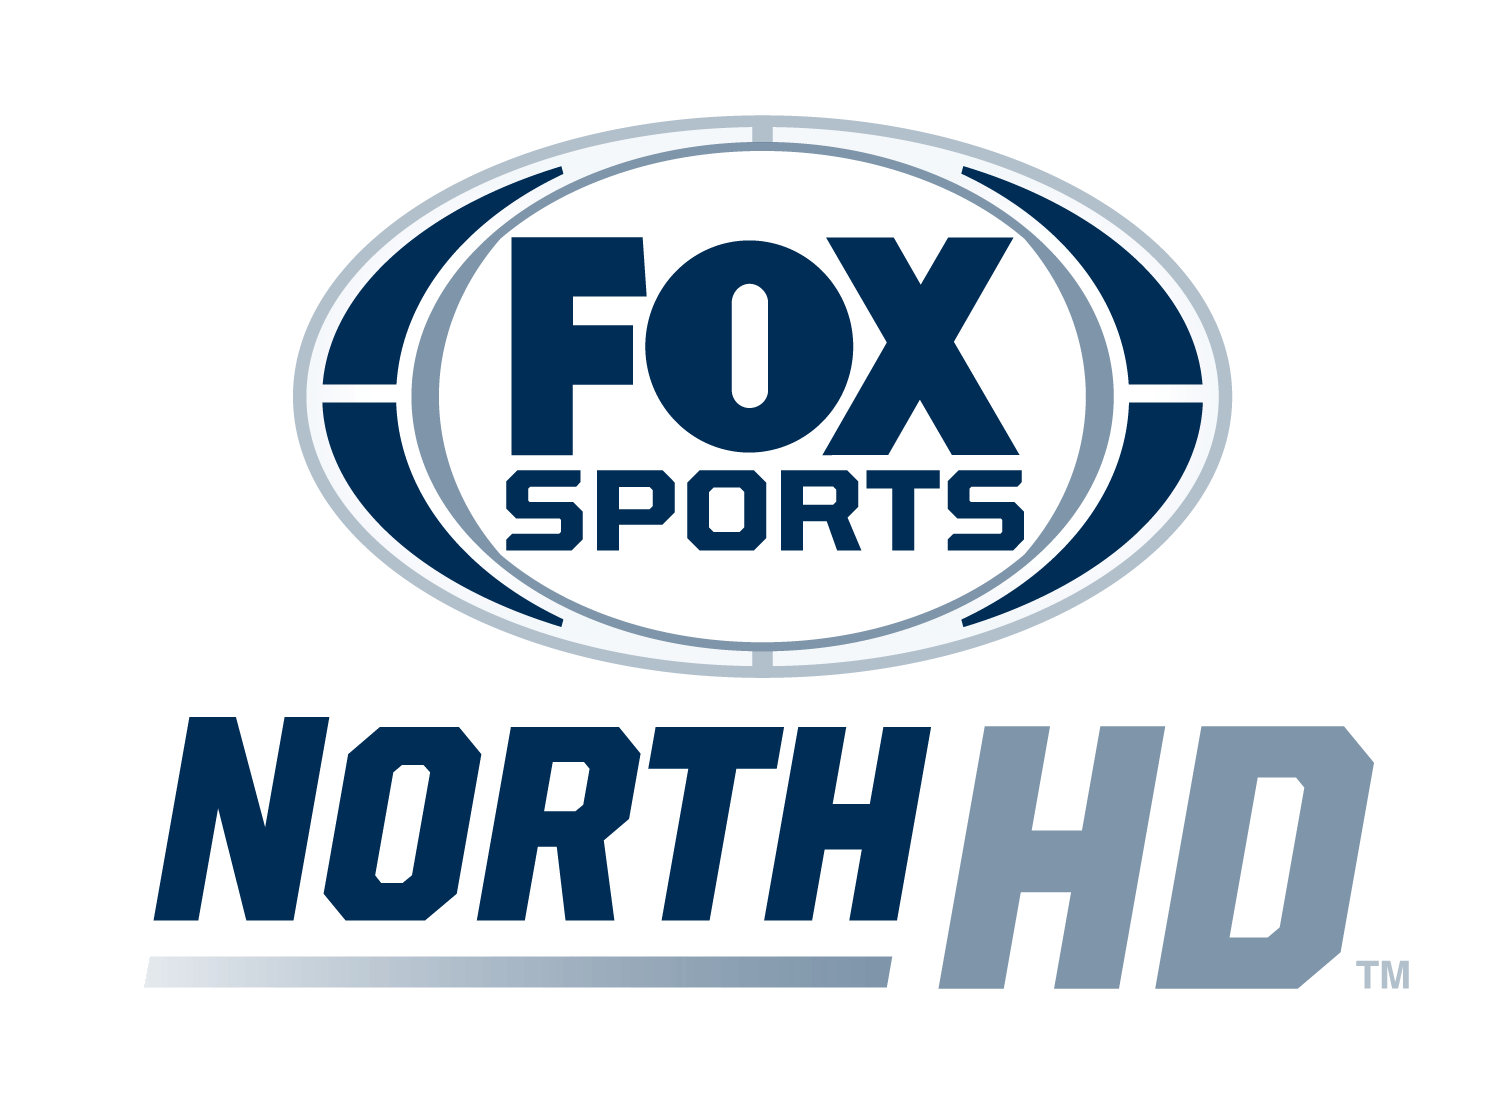 Fox Sports North HD